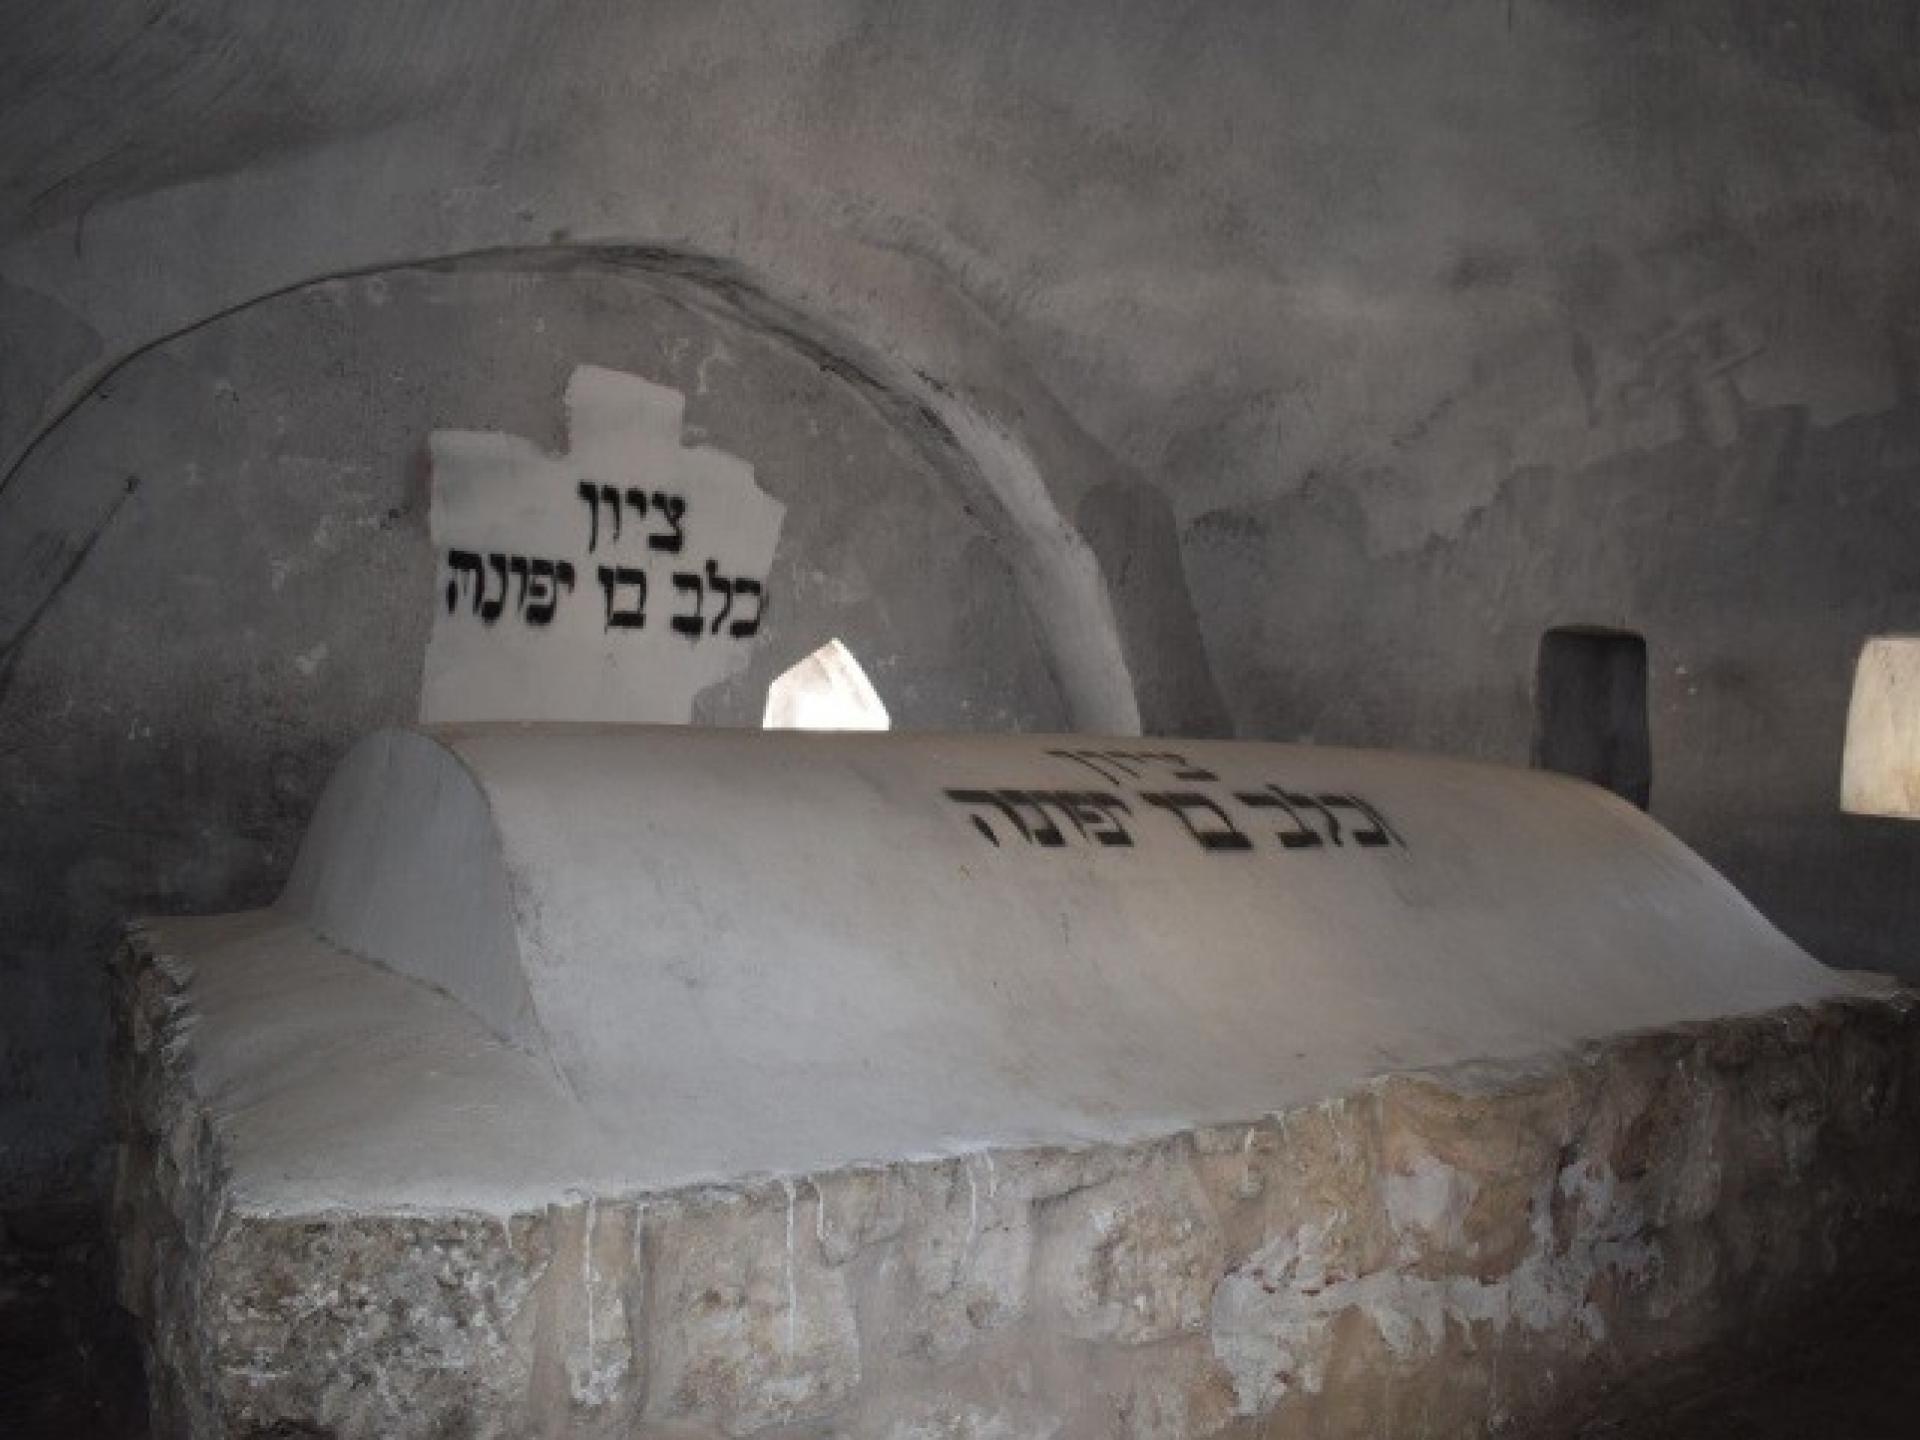 Grave of Kalev Ben Yefune